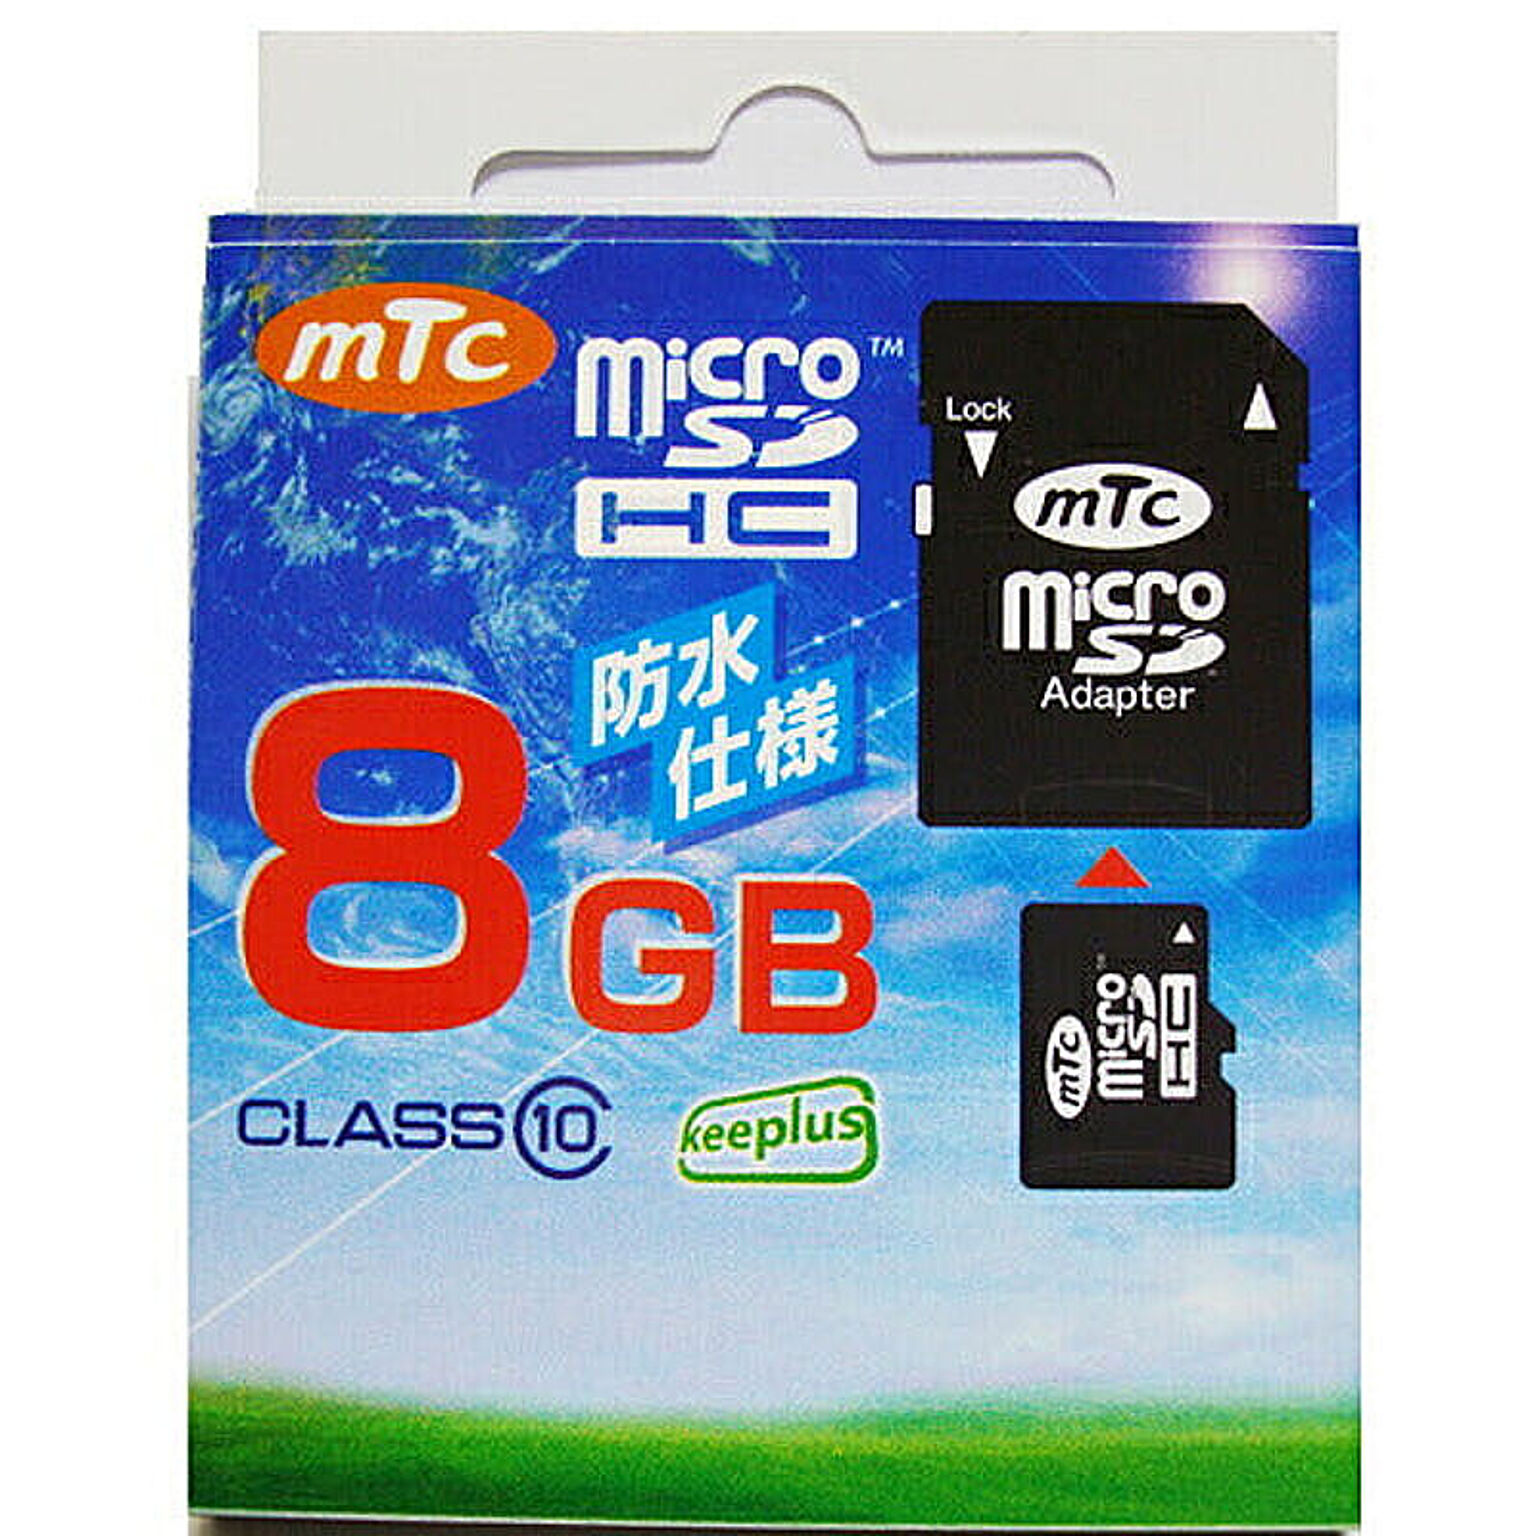 mtc microSDHCカード 8GB class10　(PK) MT-MSD08GC10W (UHS-1対応) 管理No. 4562309651599